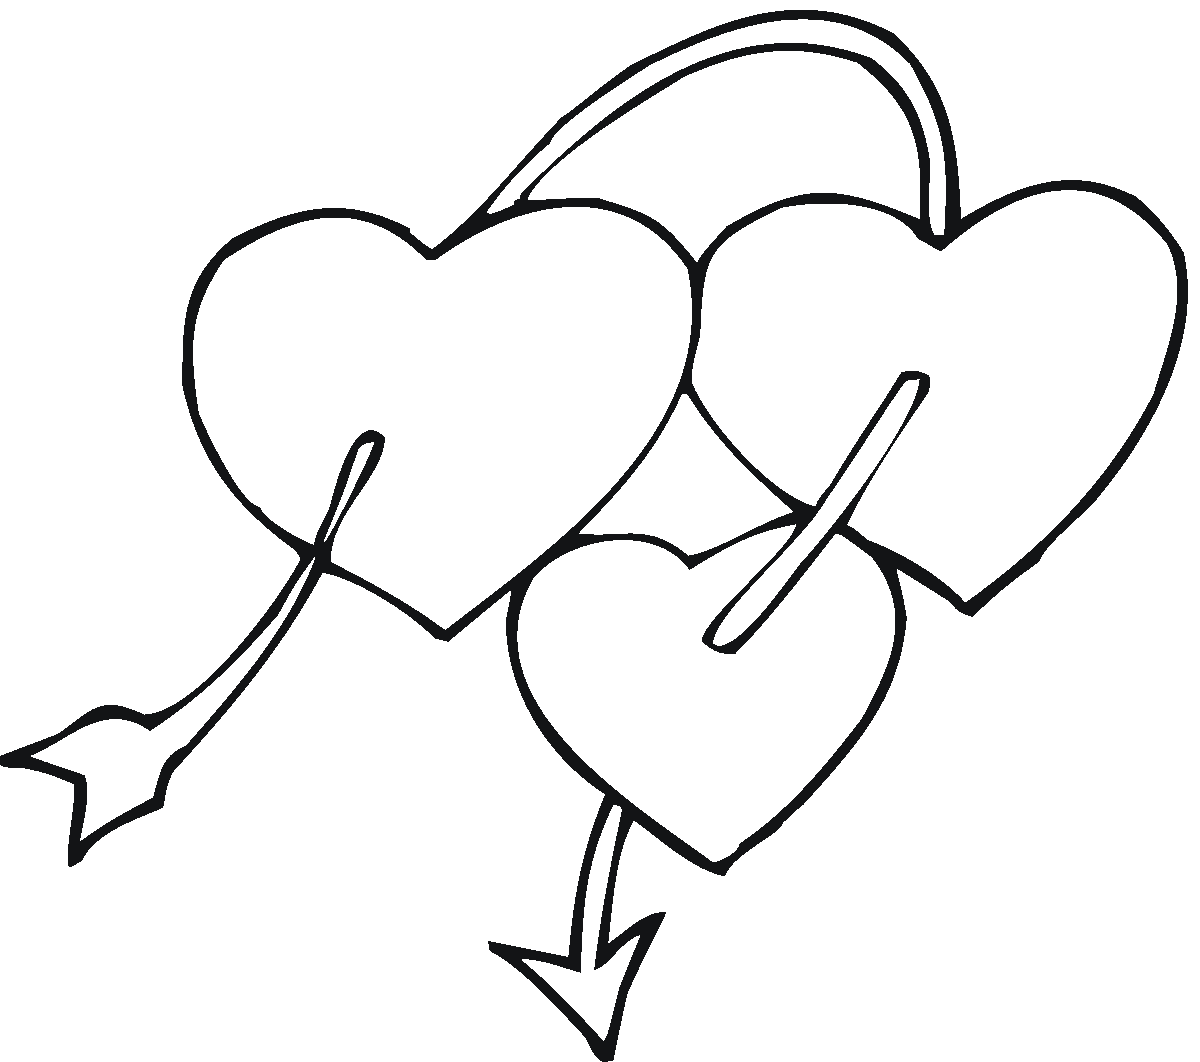 Simple Heart Drawings